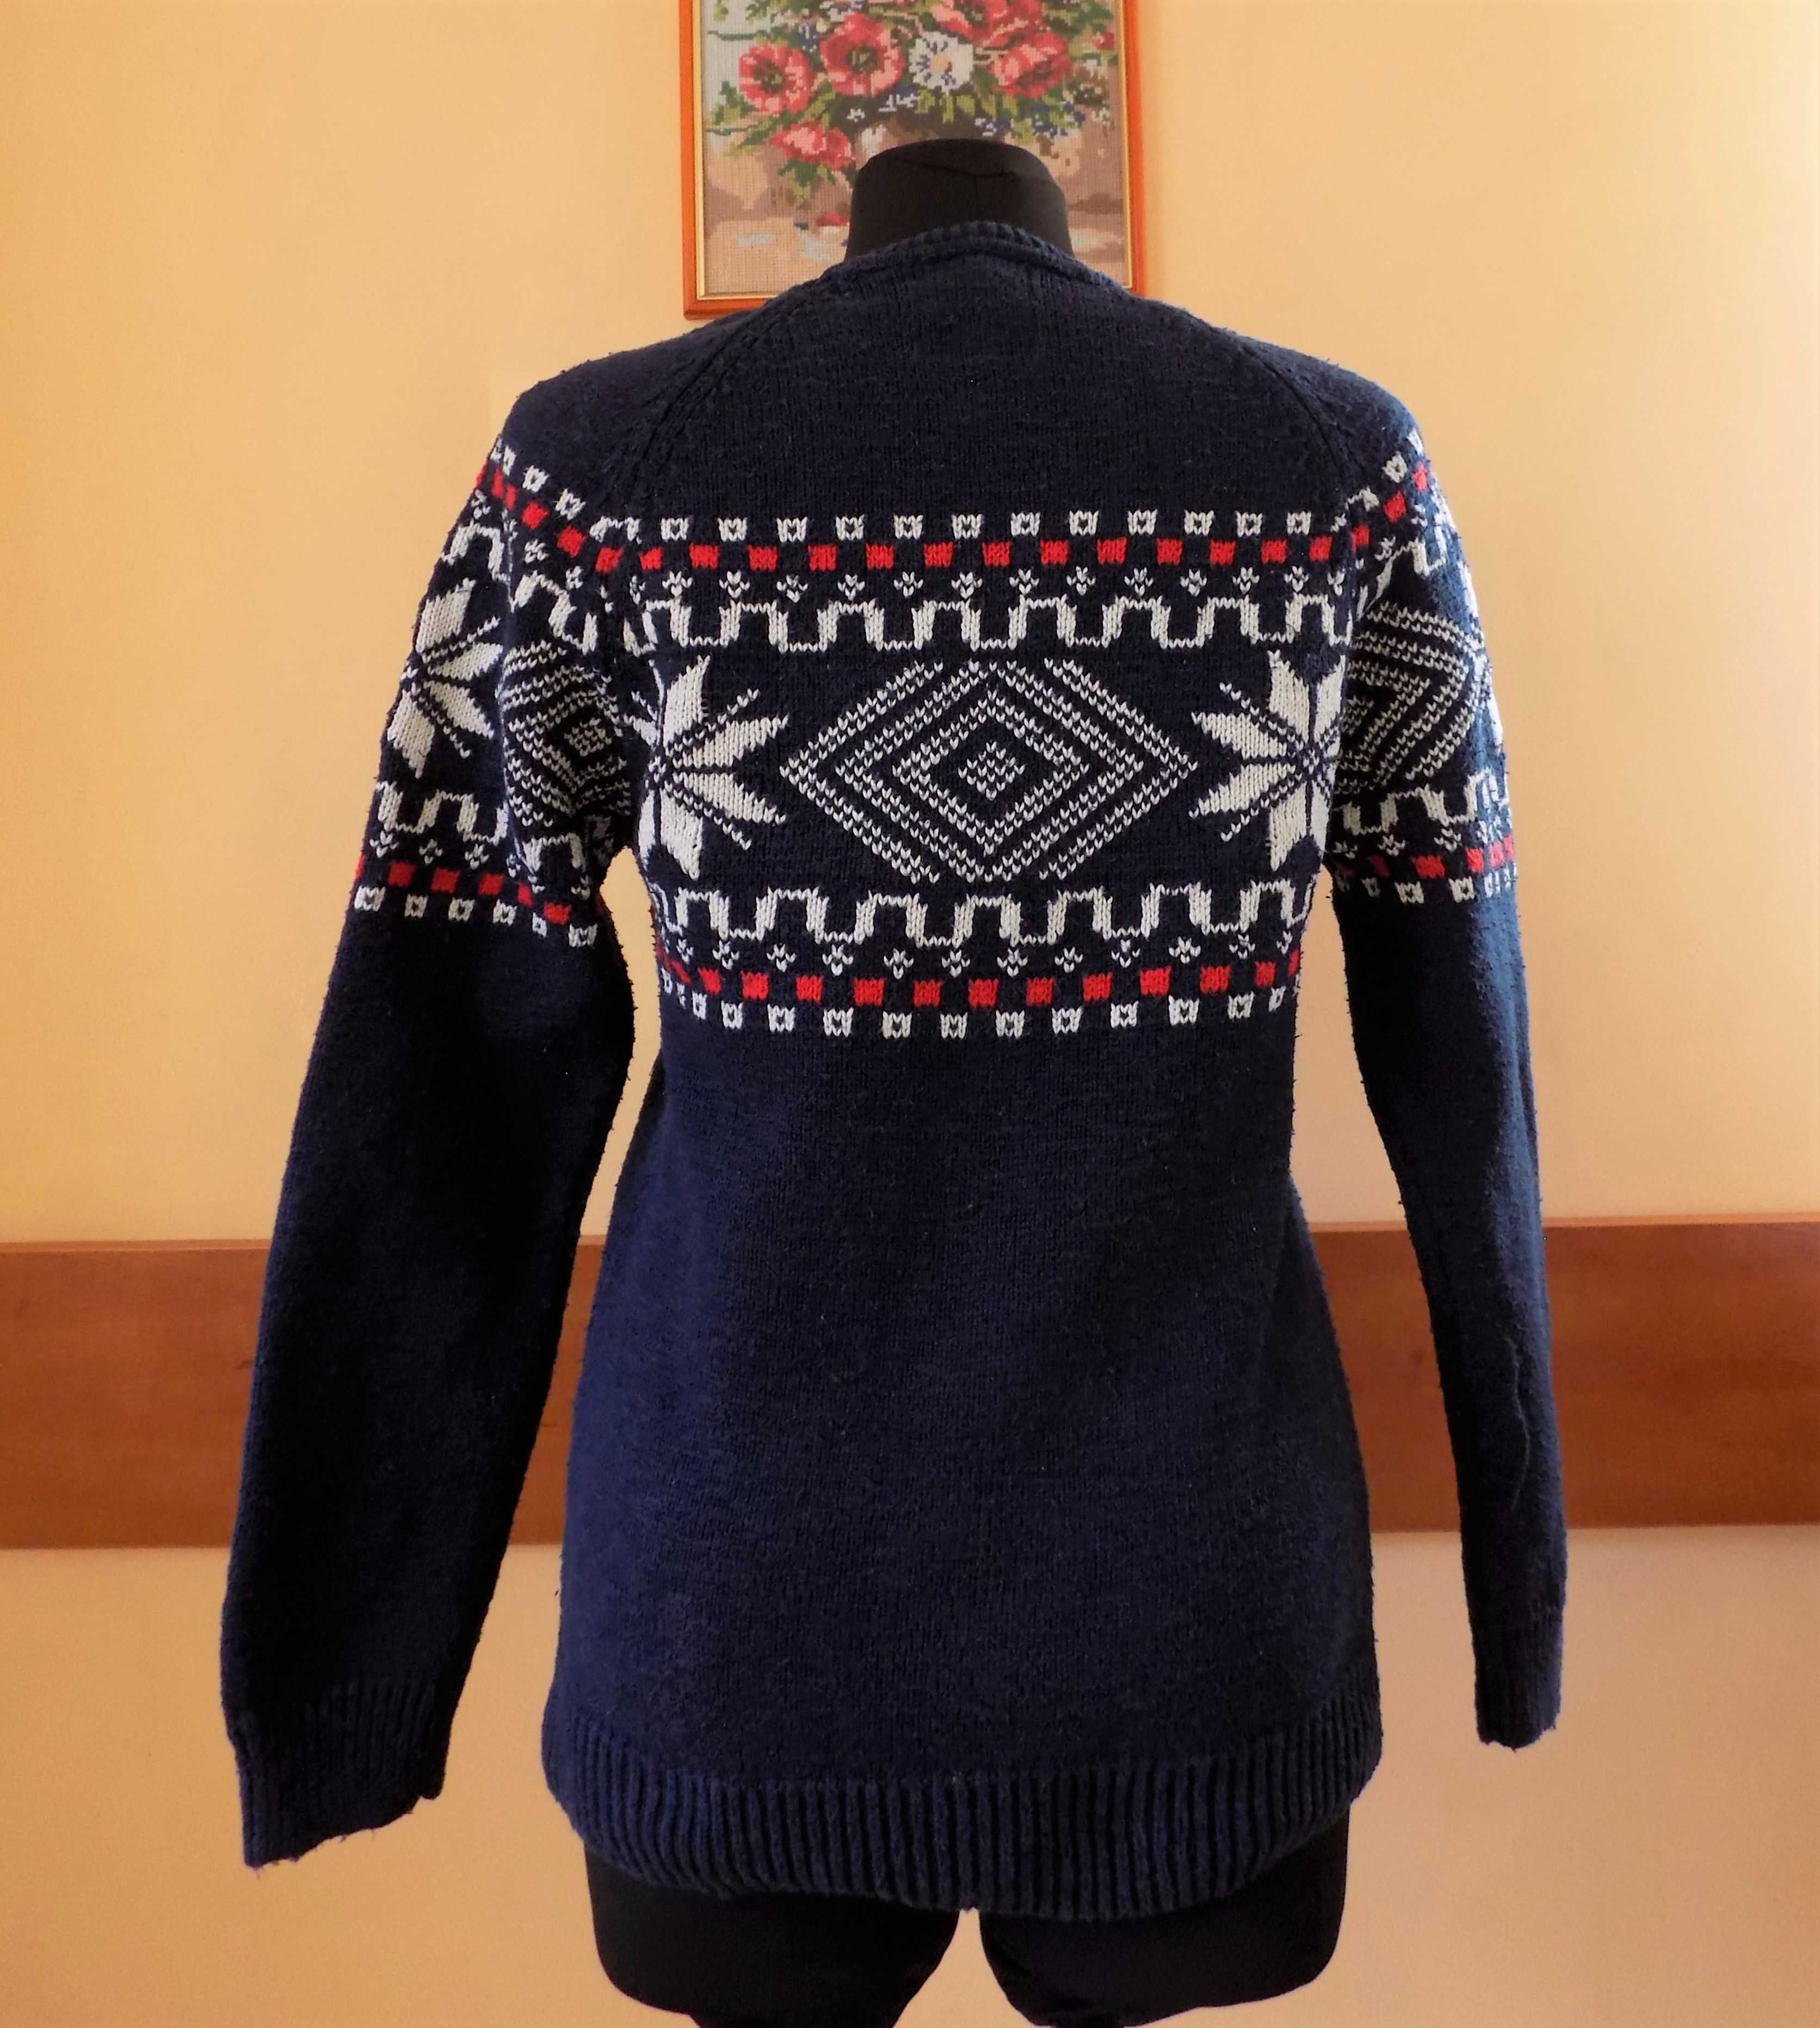 Granatowy sweter damski w norweski wzór, Hampton Republic, rozm. 36/38